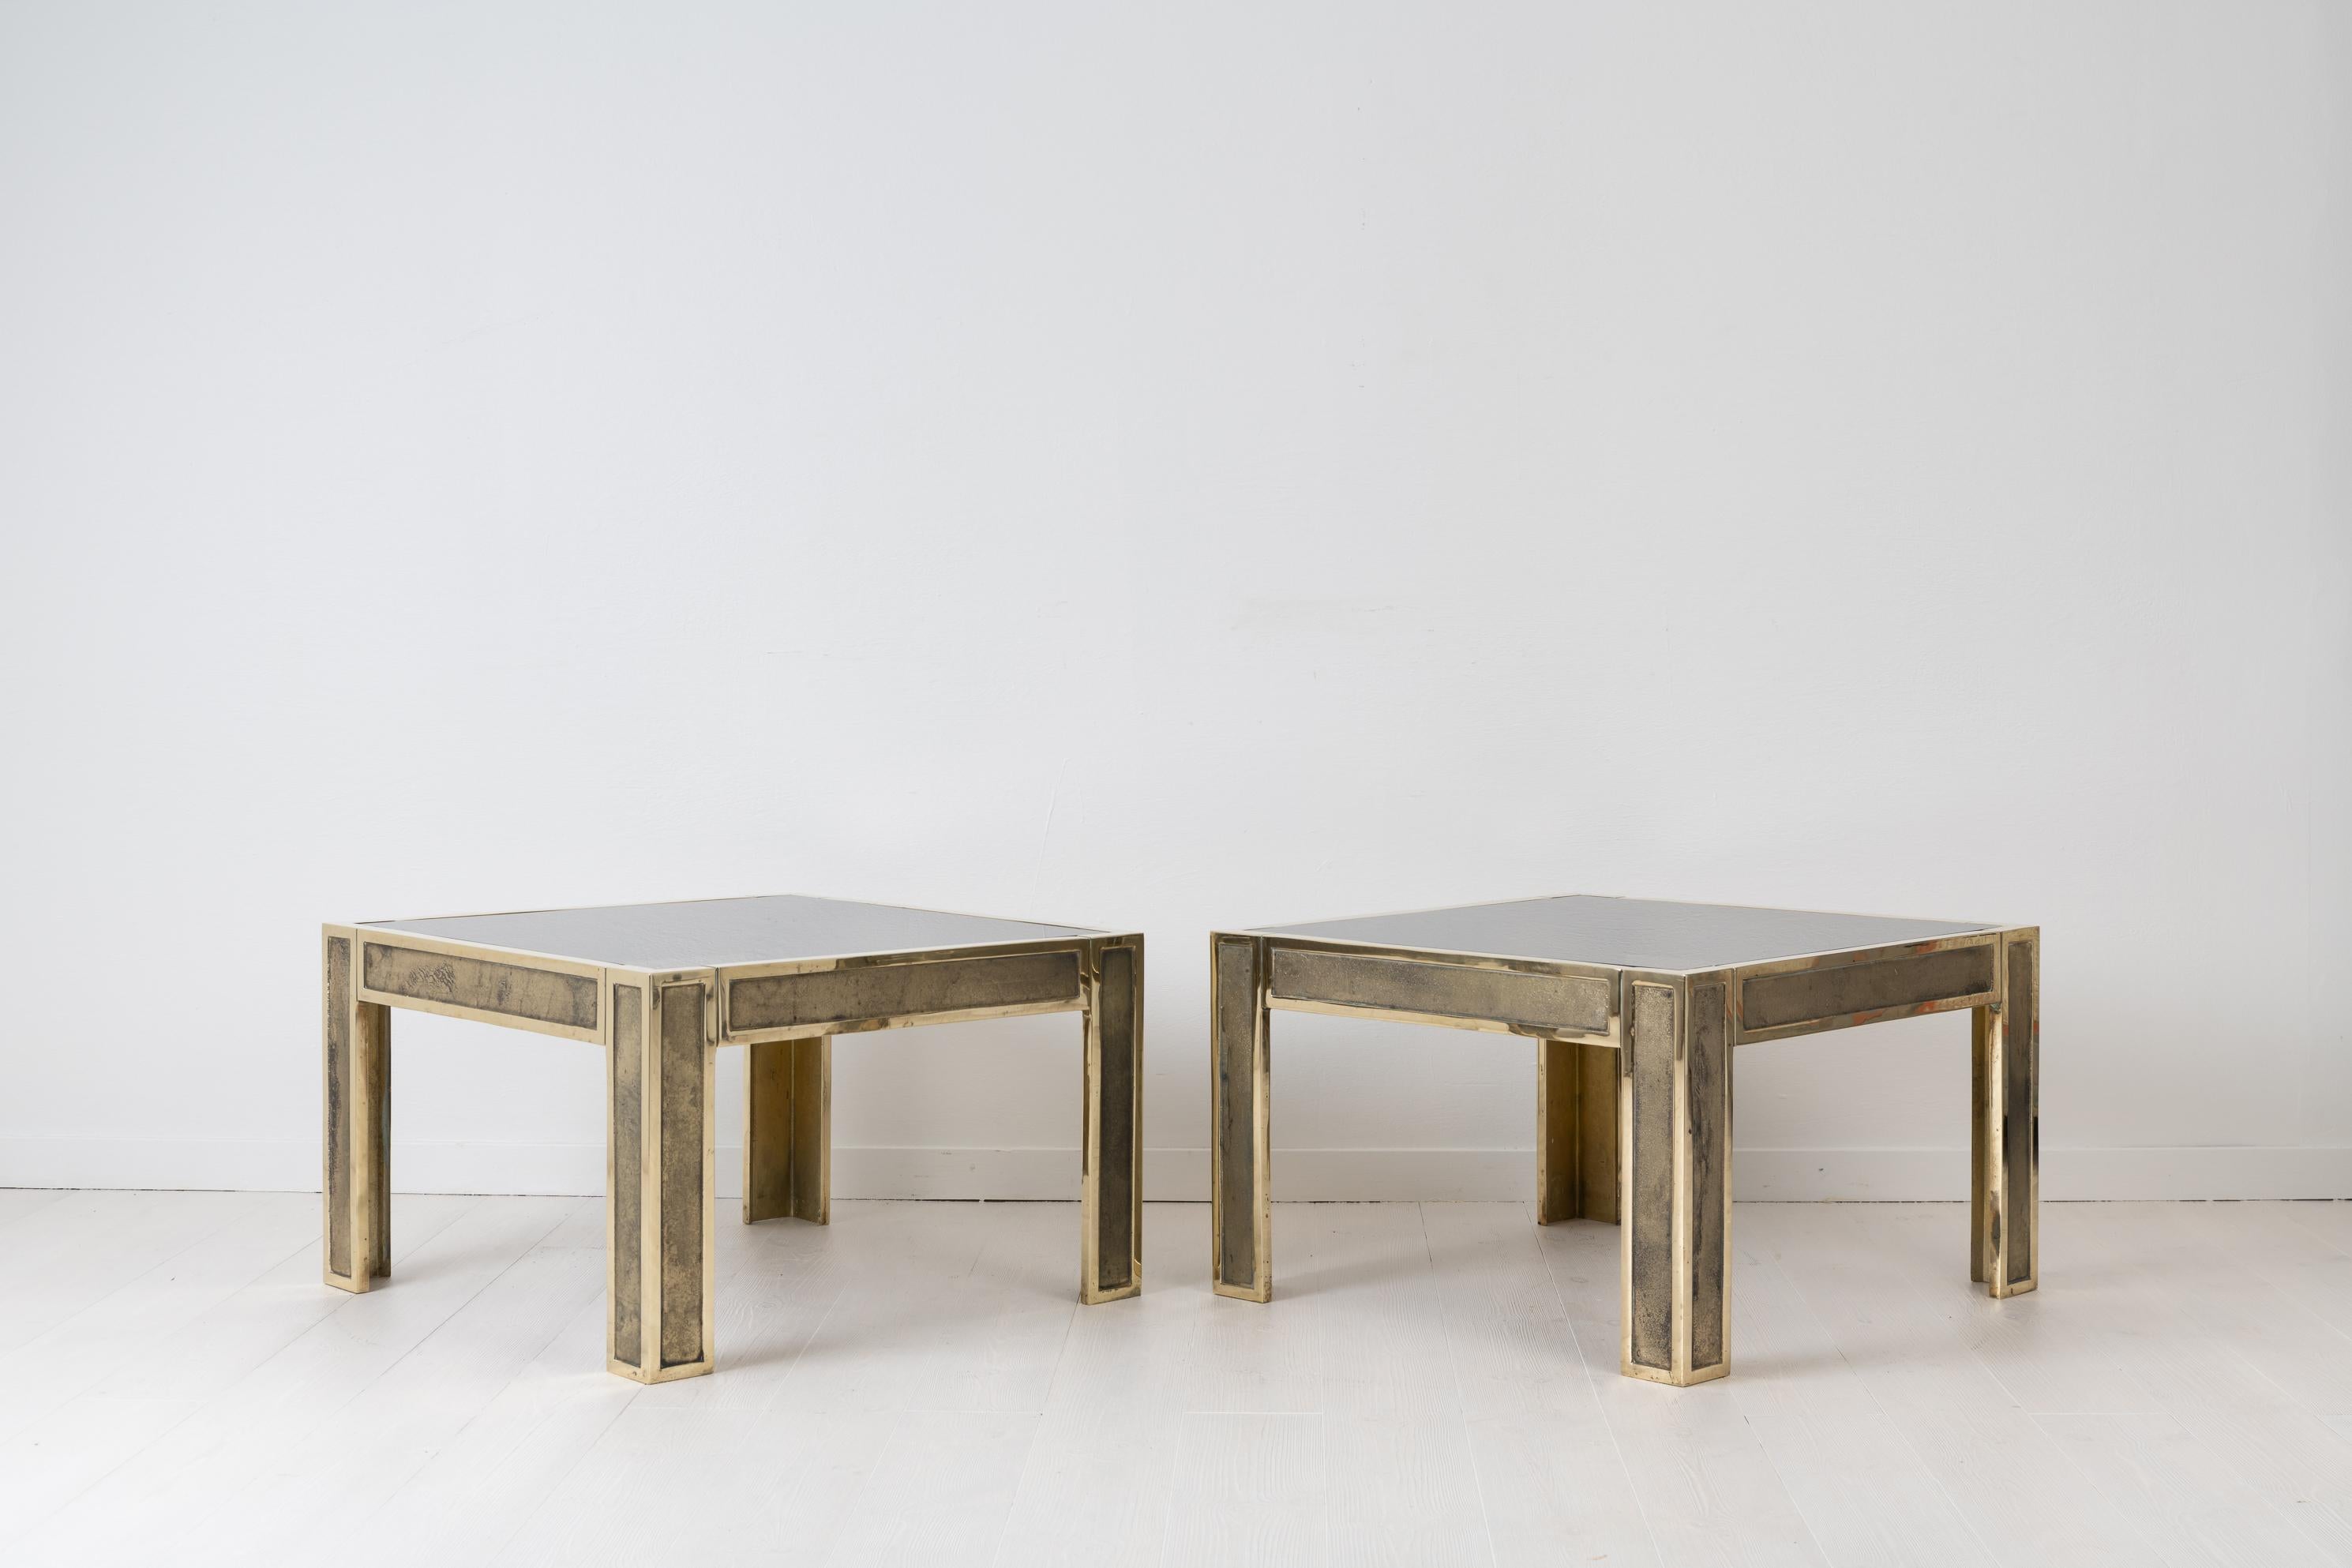 Ein Paar Beistelltische aus Norwegen. Die Tische sind skandinavisch-modern und wurden ca. 1960-1970 hergestellt. Die quadratische Form mit einem Rahmen aus massivem Messing wiegt allein 27 kg pro Tisch. Die Tischplatten sind aus rauchfarbenem Glas.